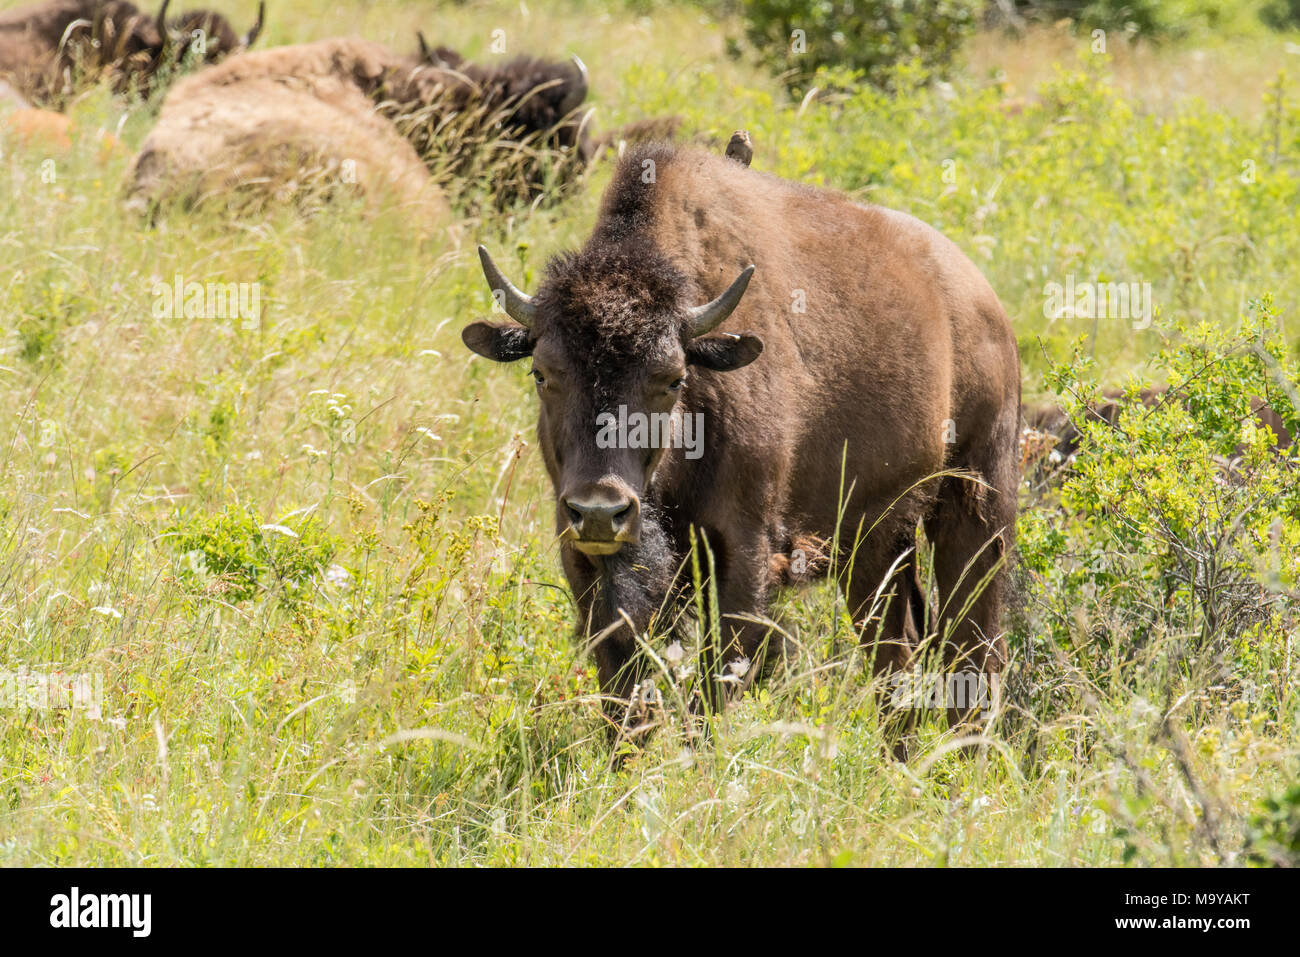 Bisonte americano o el pastoreo de búfalos dentro del rango nacional de bisontes, Montana, EE.UU. Foto de stock